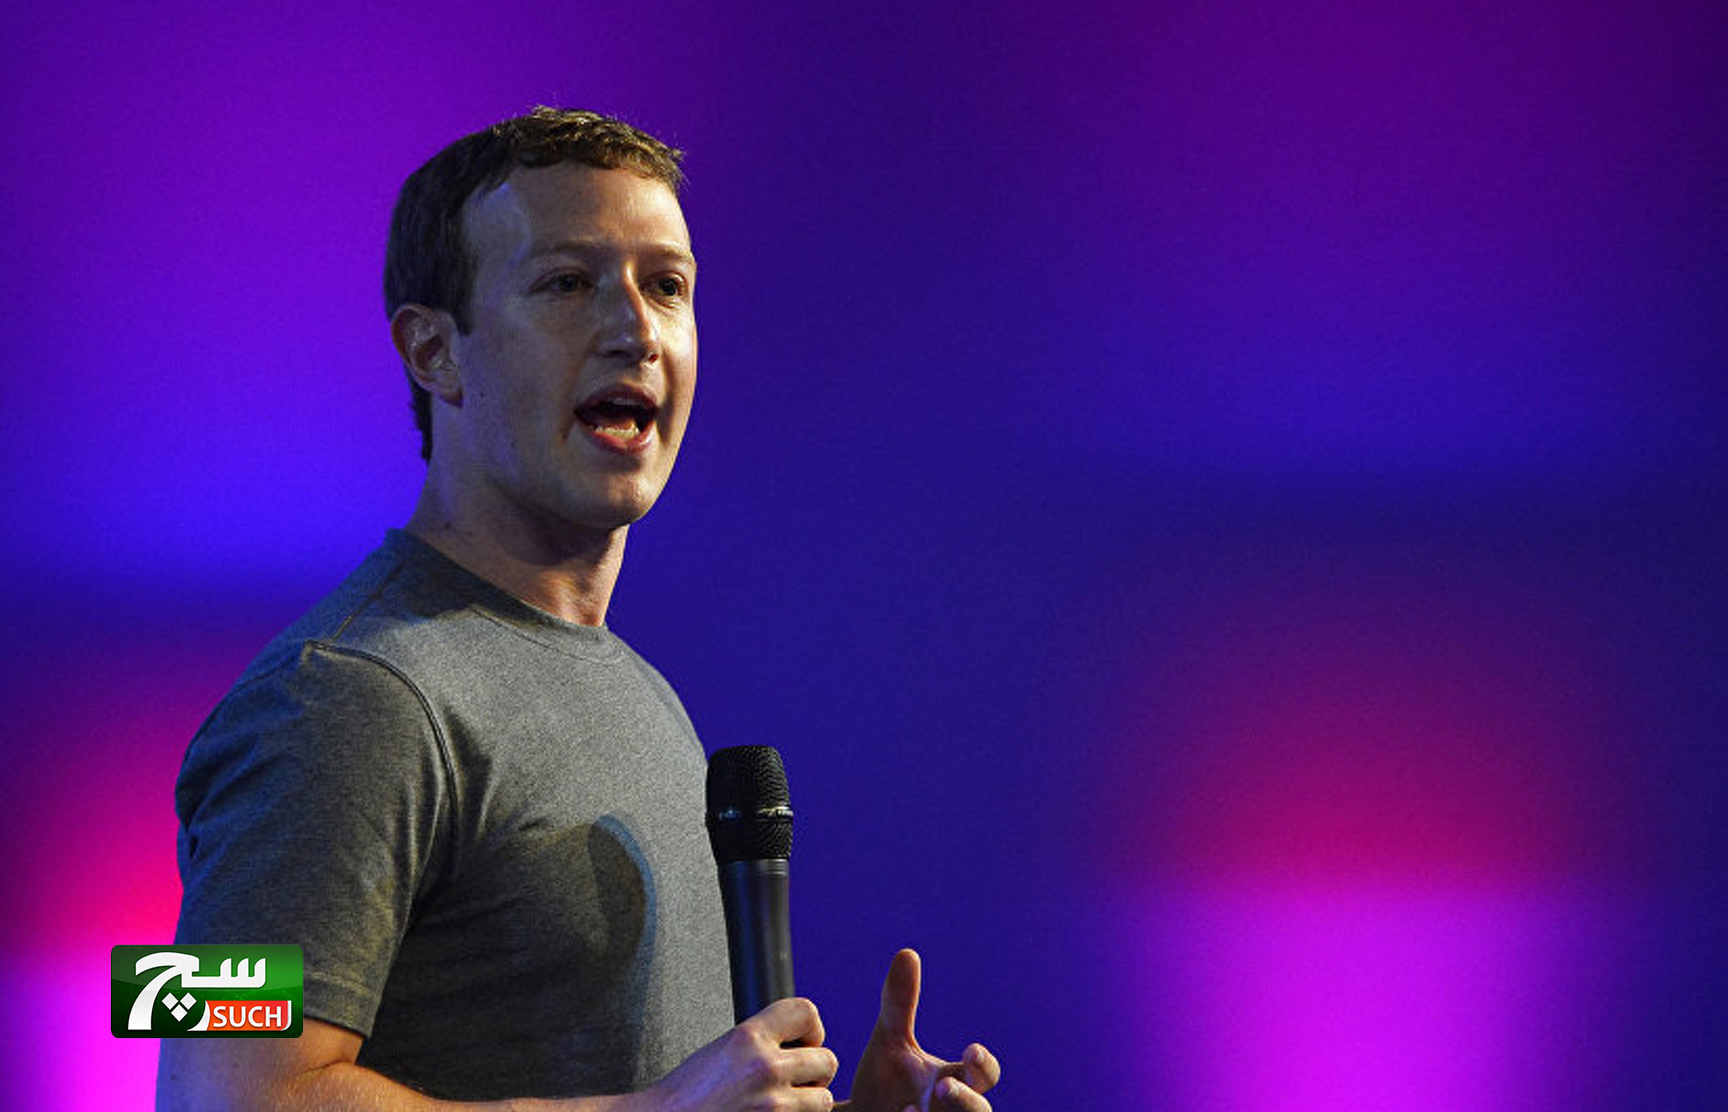 فيسبوك والإنترنت على وشك التحول بالكامل...زوكربيرغ يكشف 5 تغييرات رئيسة سنشهدها قريبا